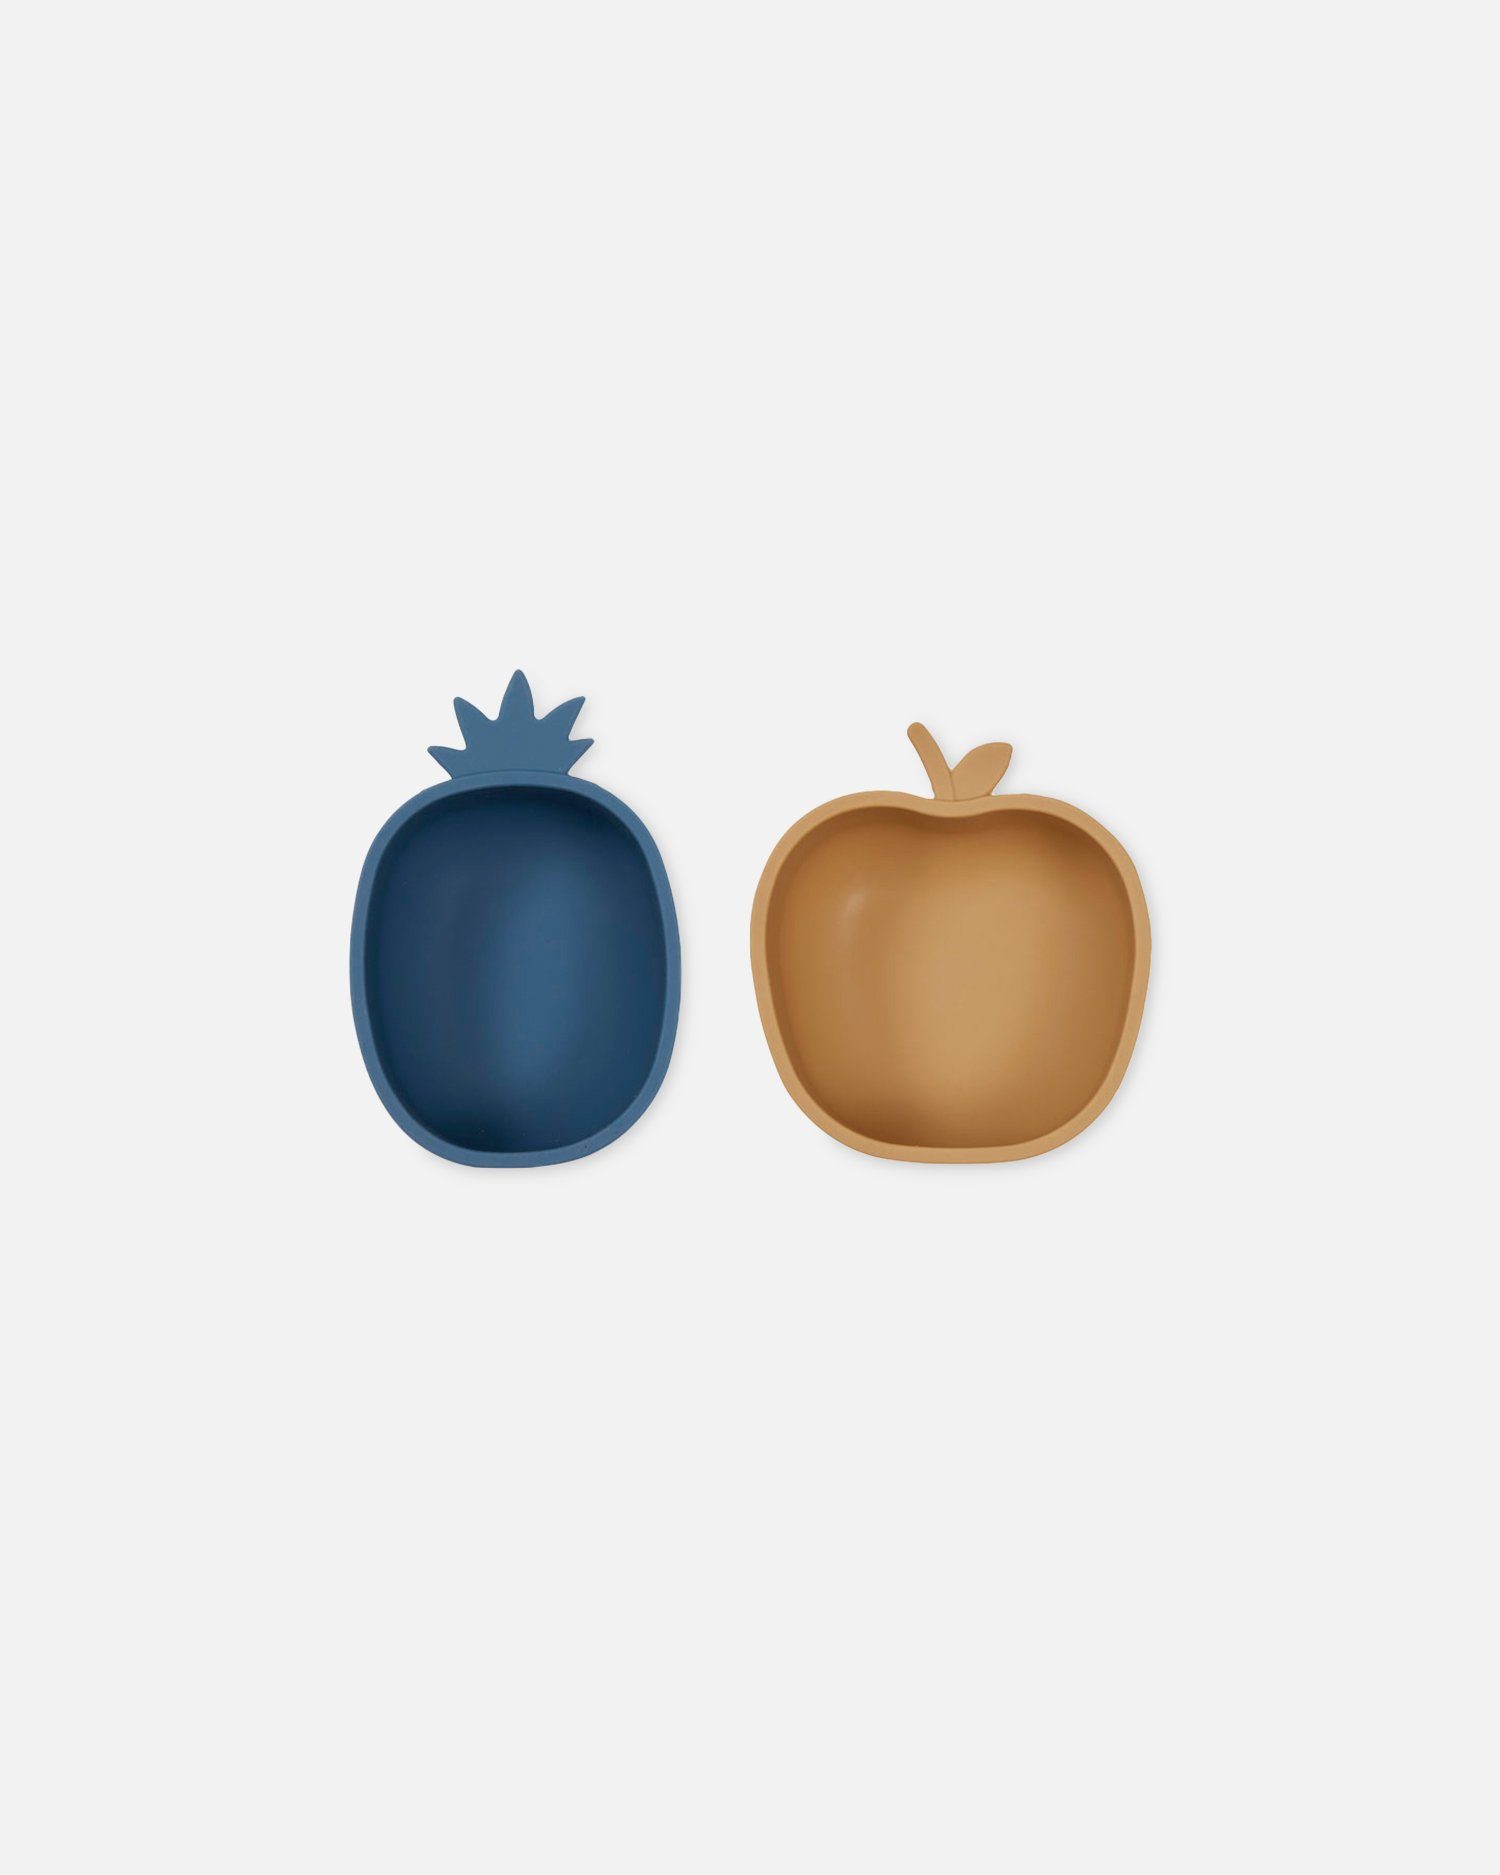 OYOY Kindergeschirr-Set Snack Bowl Kindergeschirr Silikon Pineapple & Apple Mehrfarbig (2-tlg), 100% Silikon